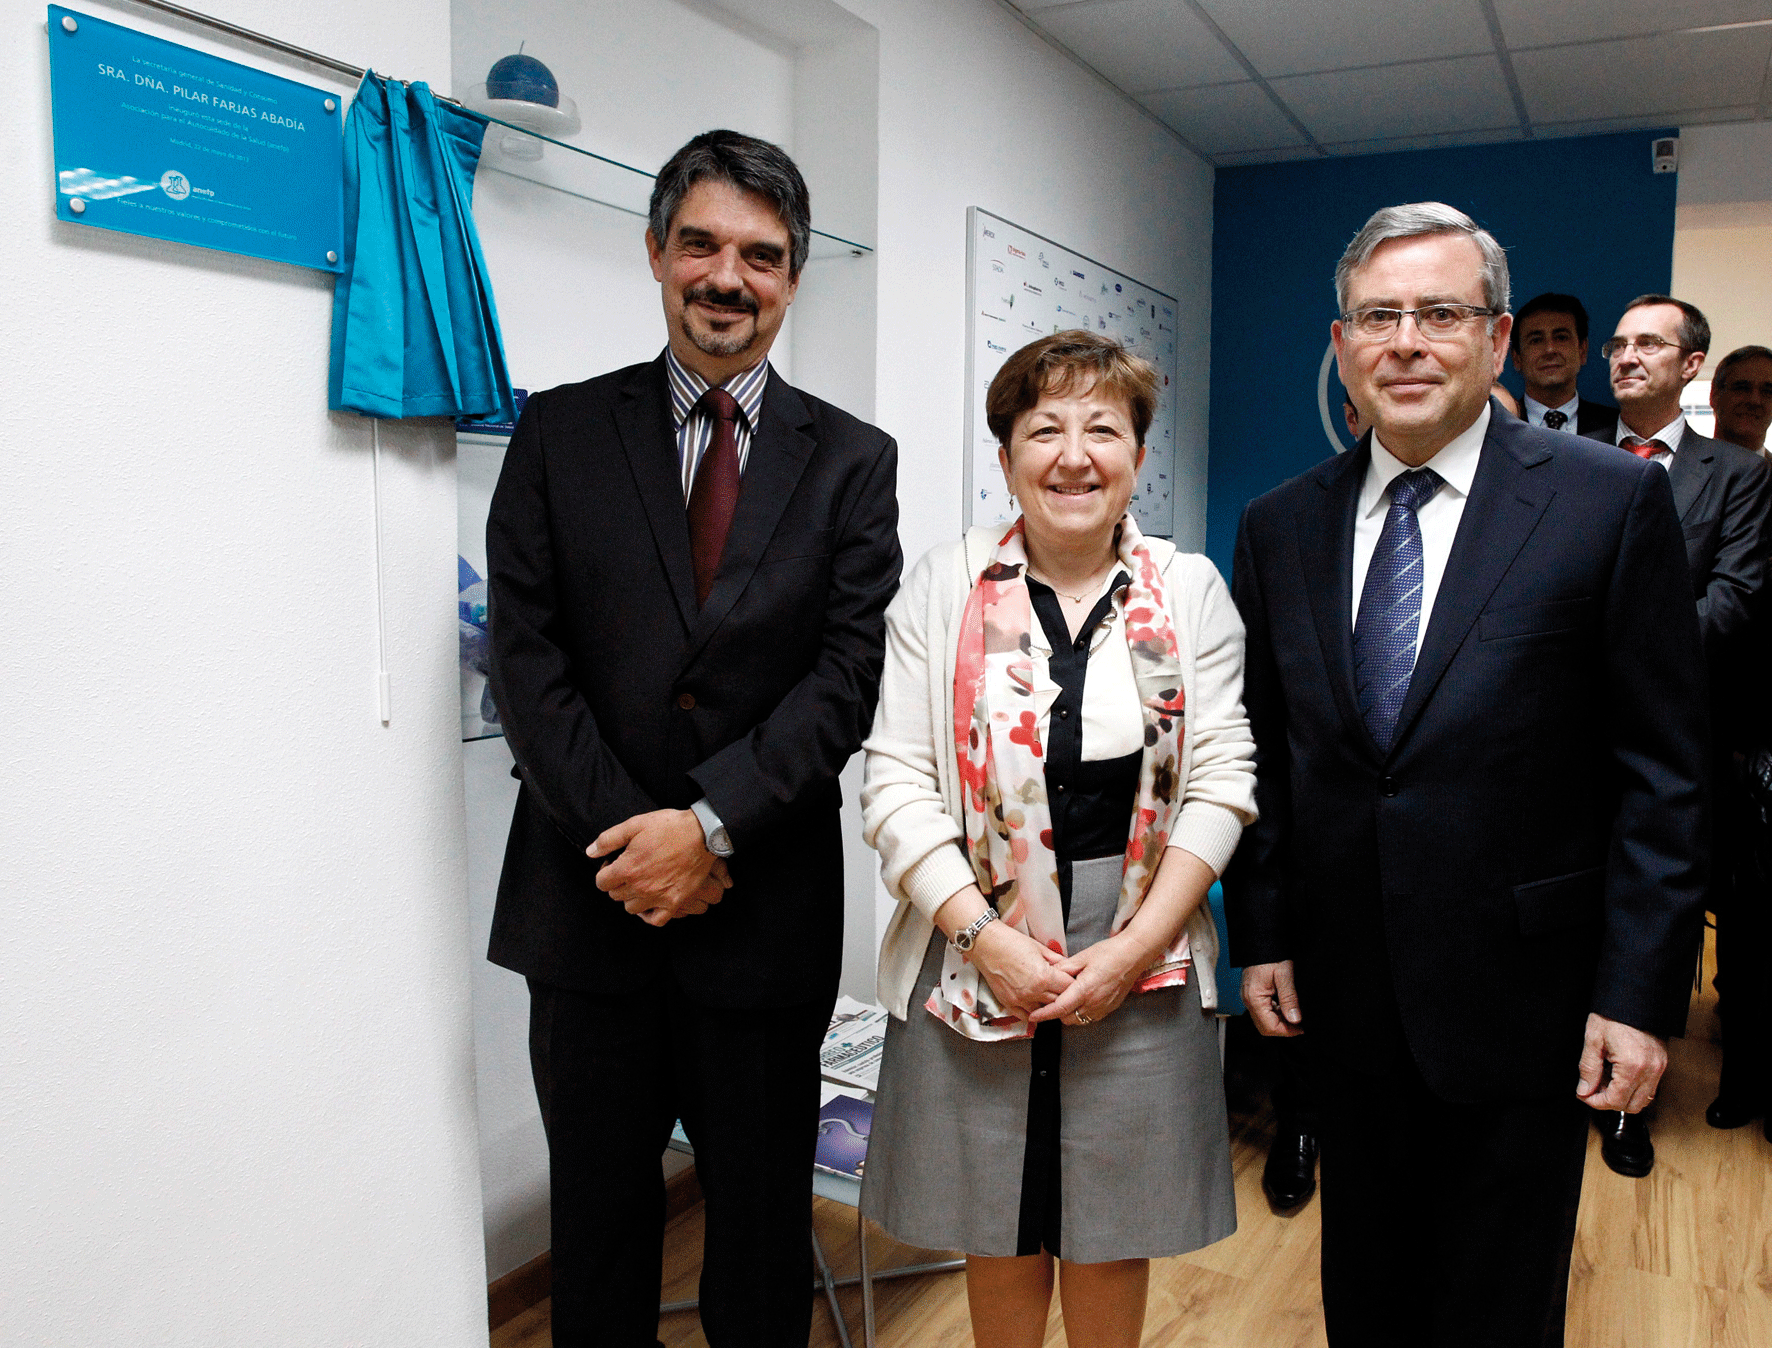 Pilar Farjas, junto con representantes de anefp, en la inauguración de la remodelada sede